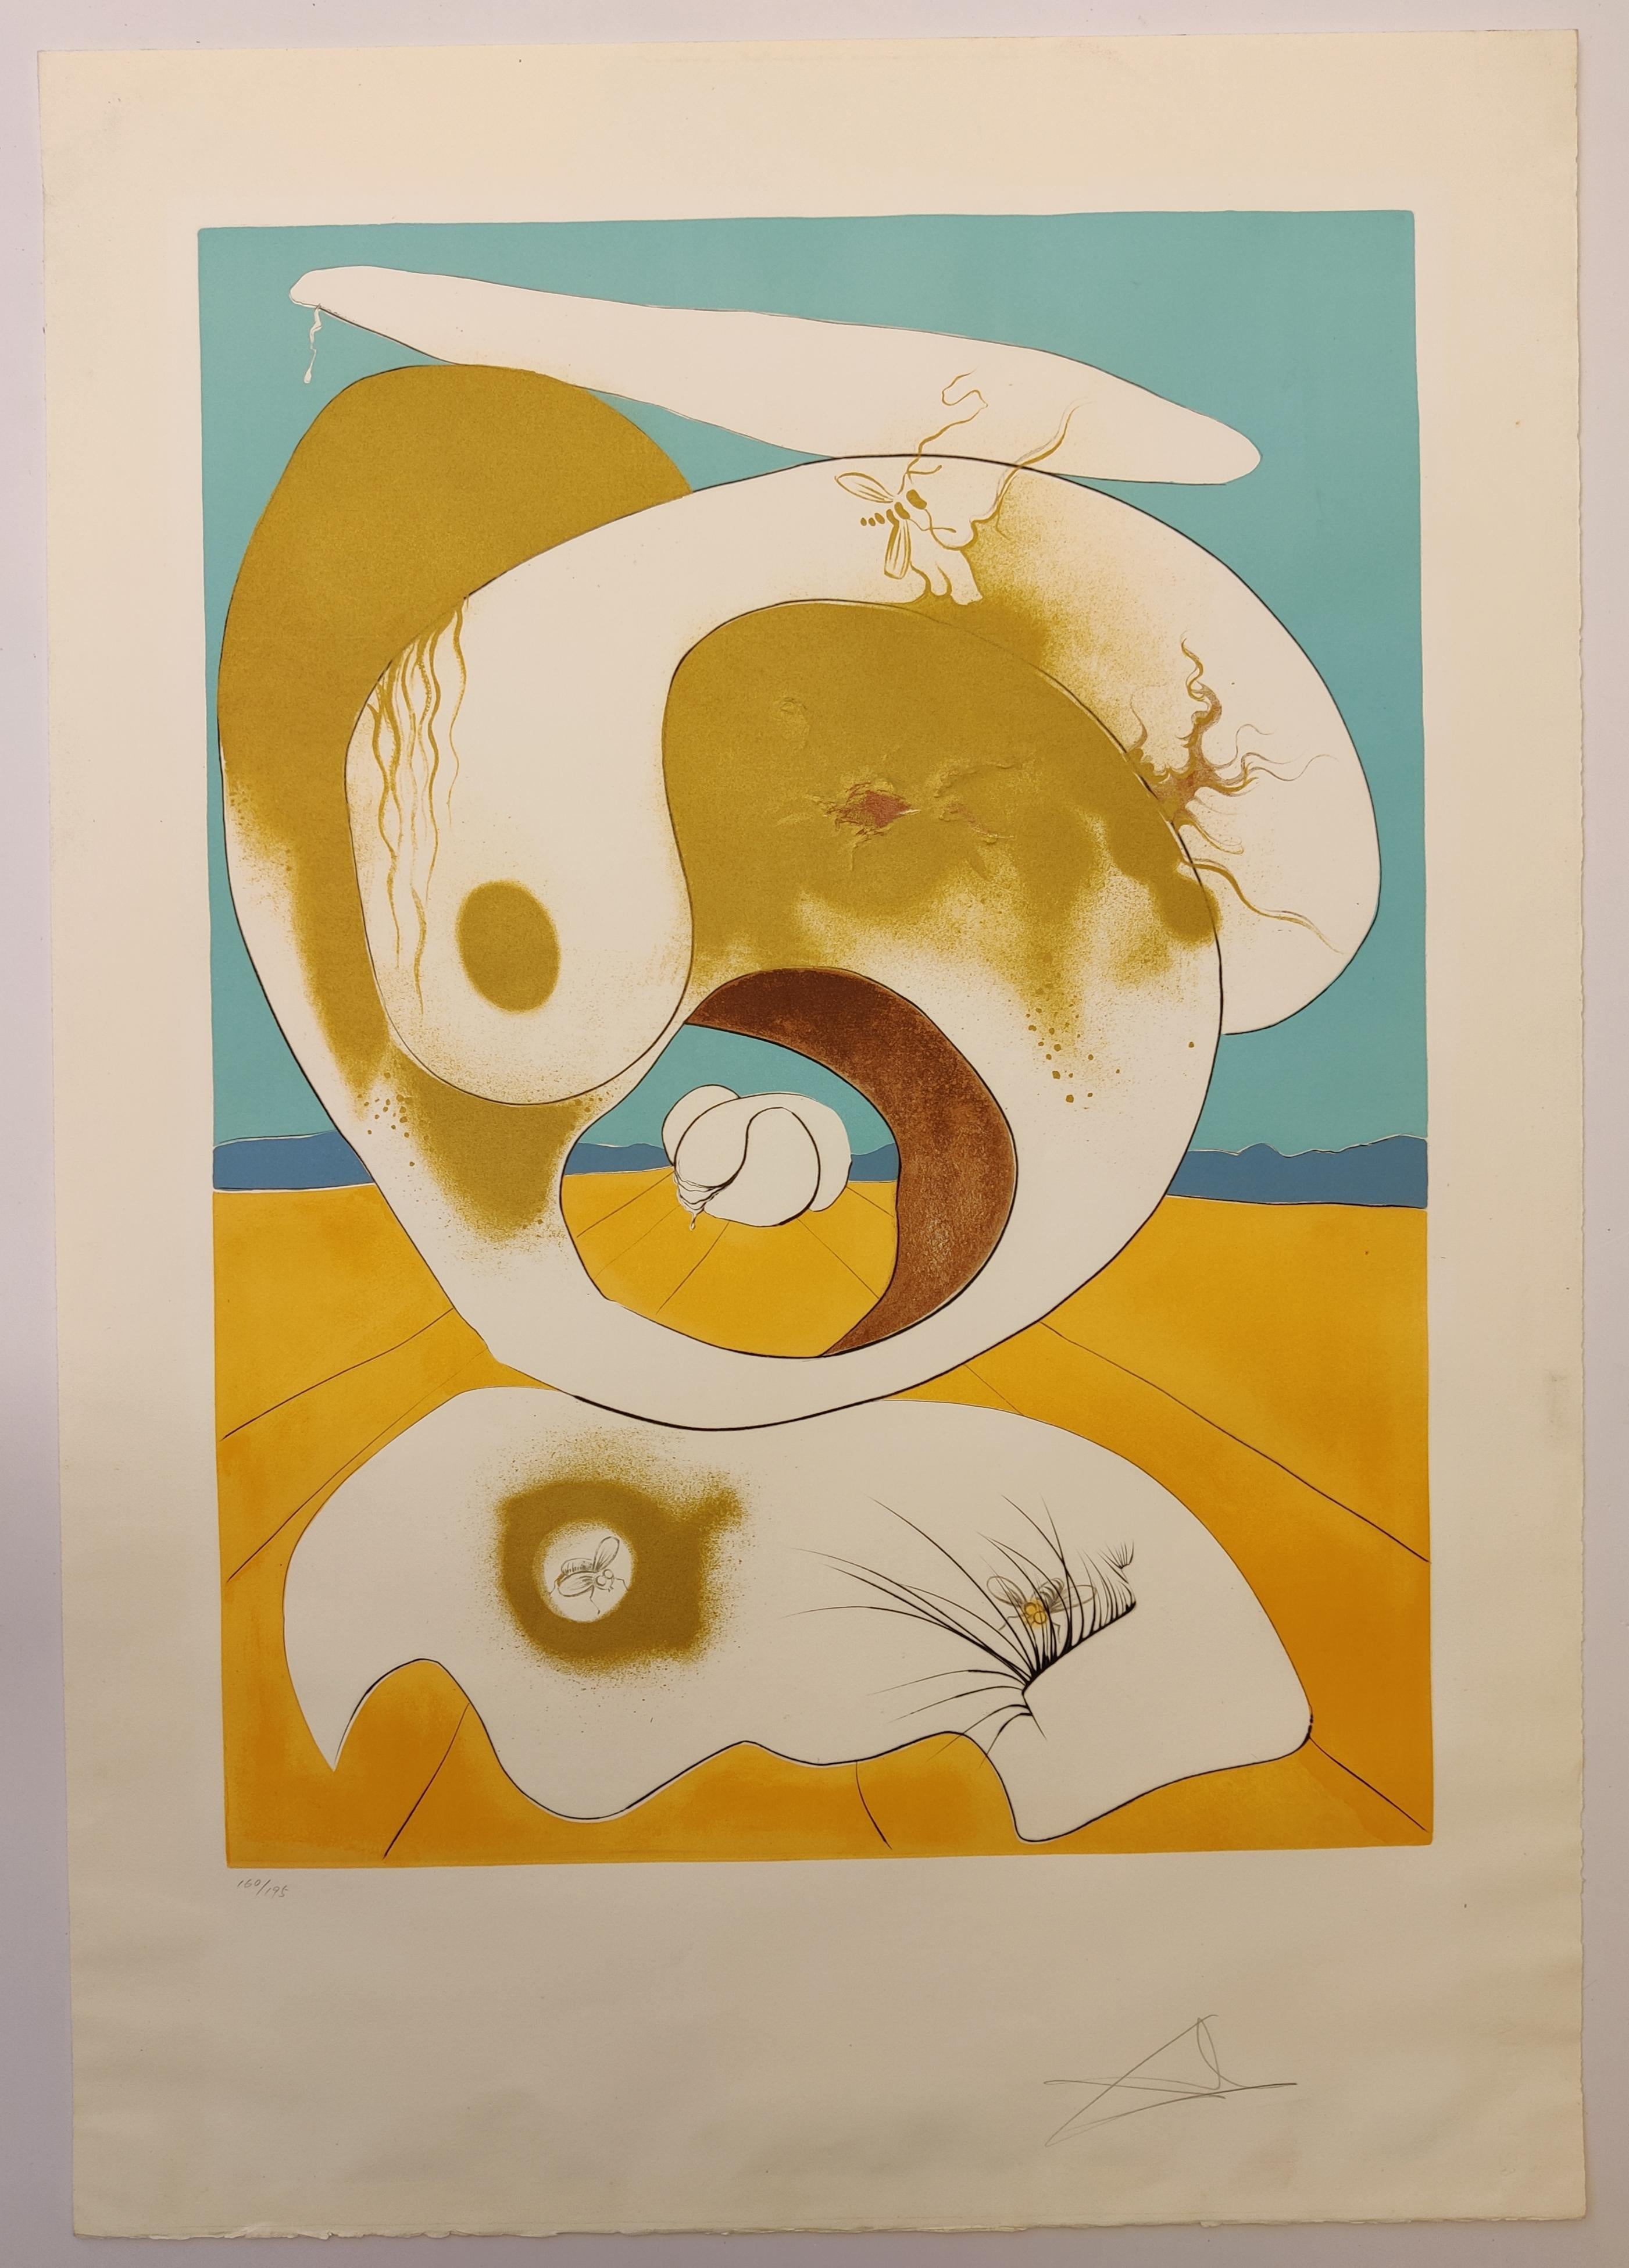 Salvador Dali -- Vision planétaire et scatologiquelithographie - Print de Salvador Dalí